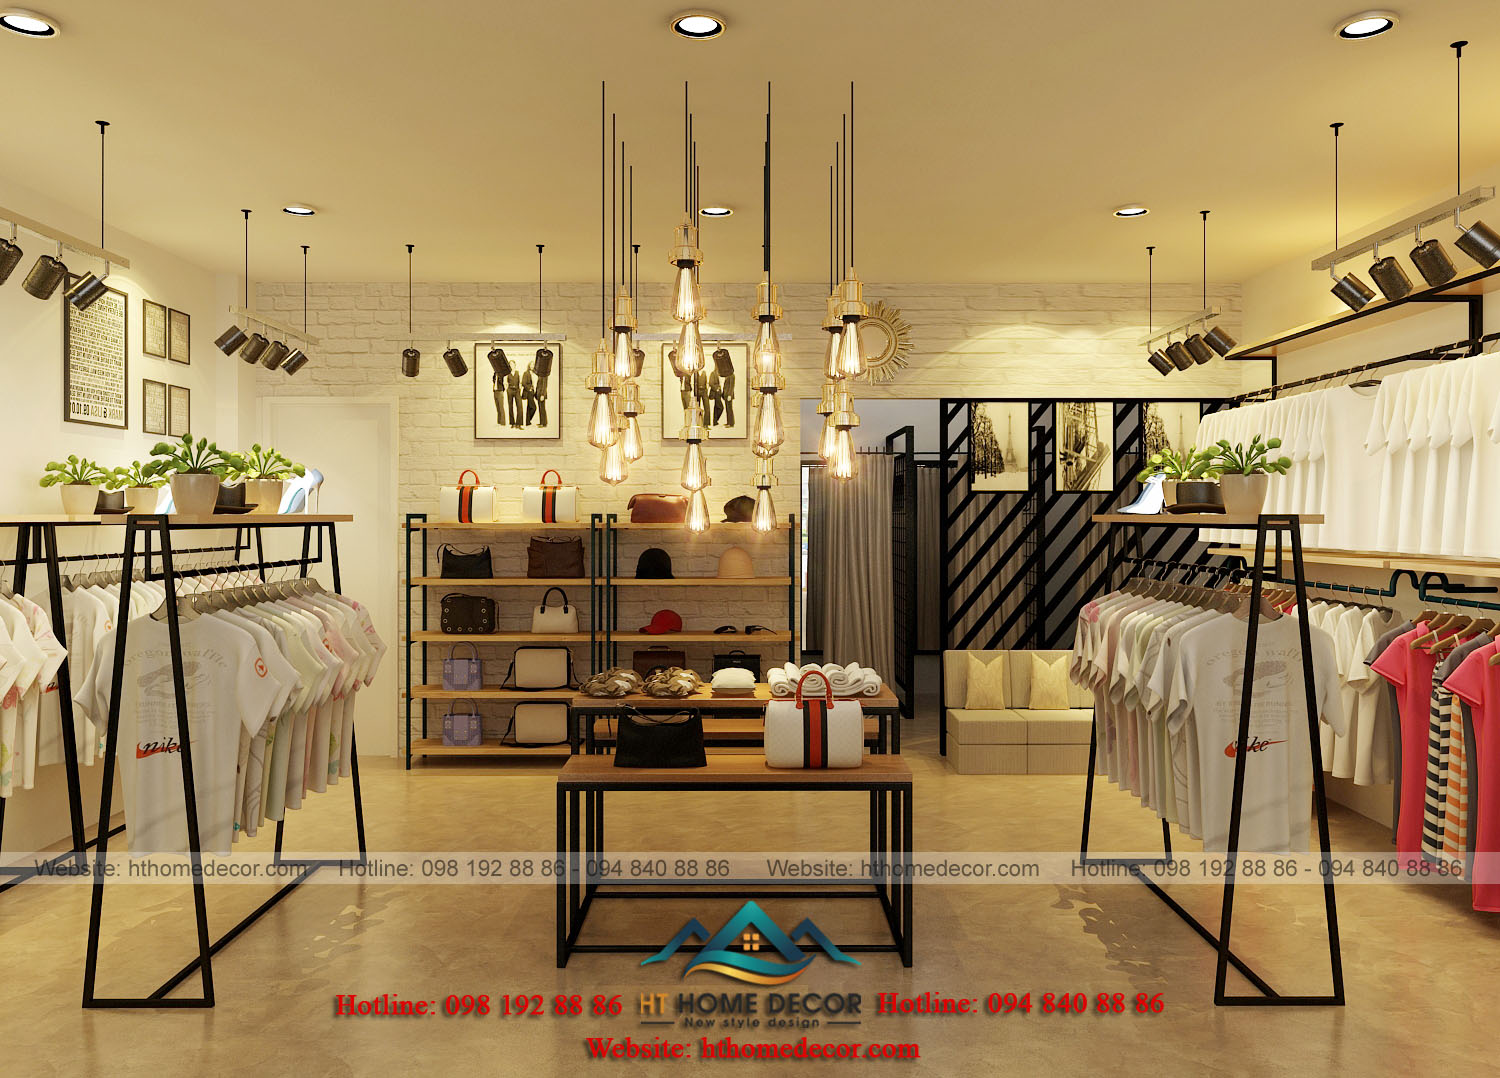 shop thời trang nữ rộng rãi Hệ thống đèn treo vừa để trang trí, vừa cung cấp ánh sáng cho toàn bộ shop thời trang.